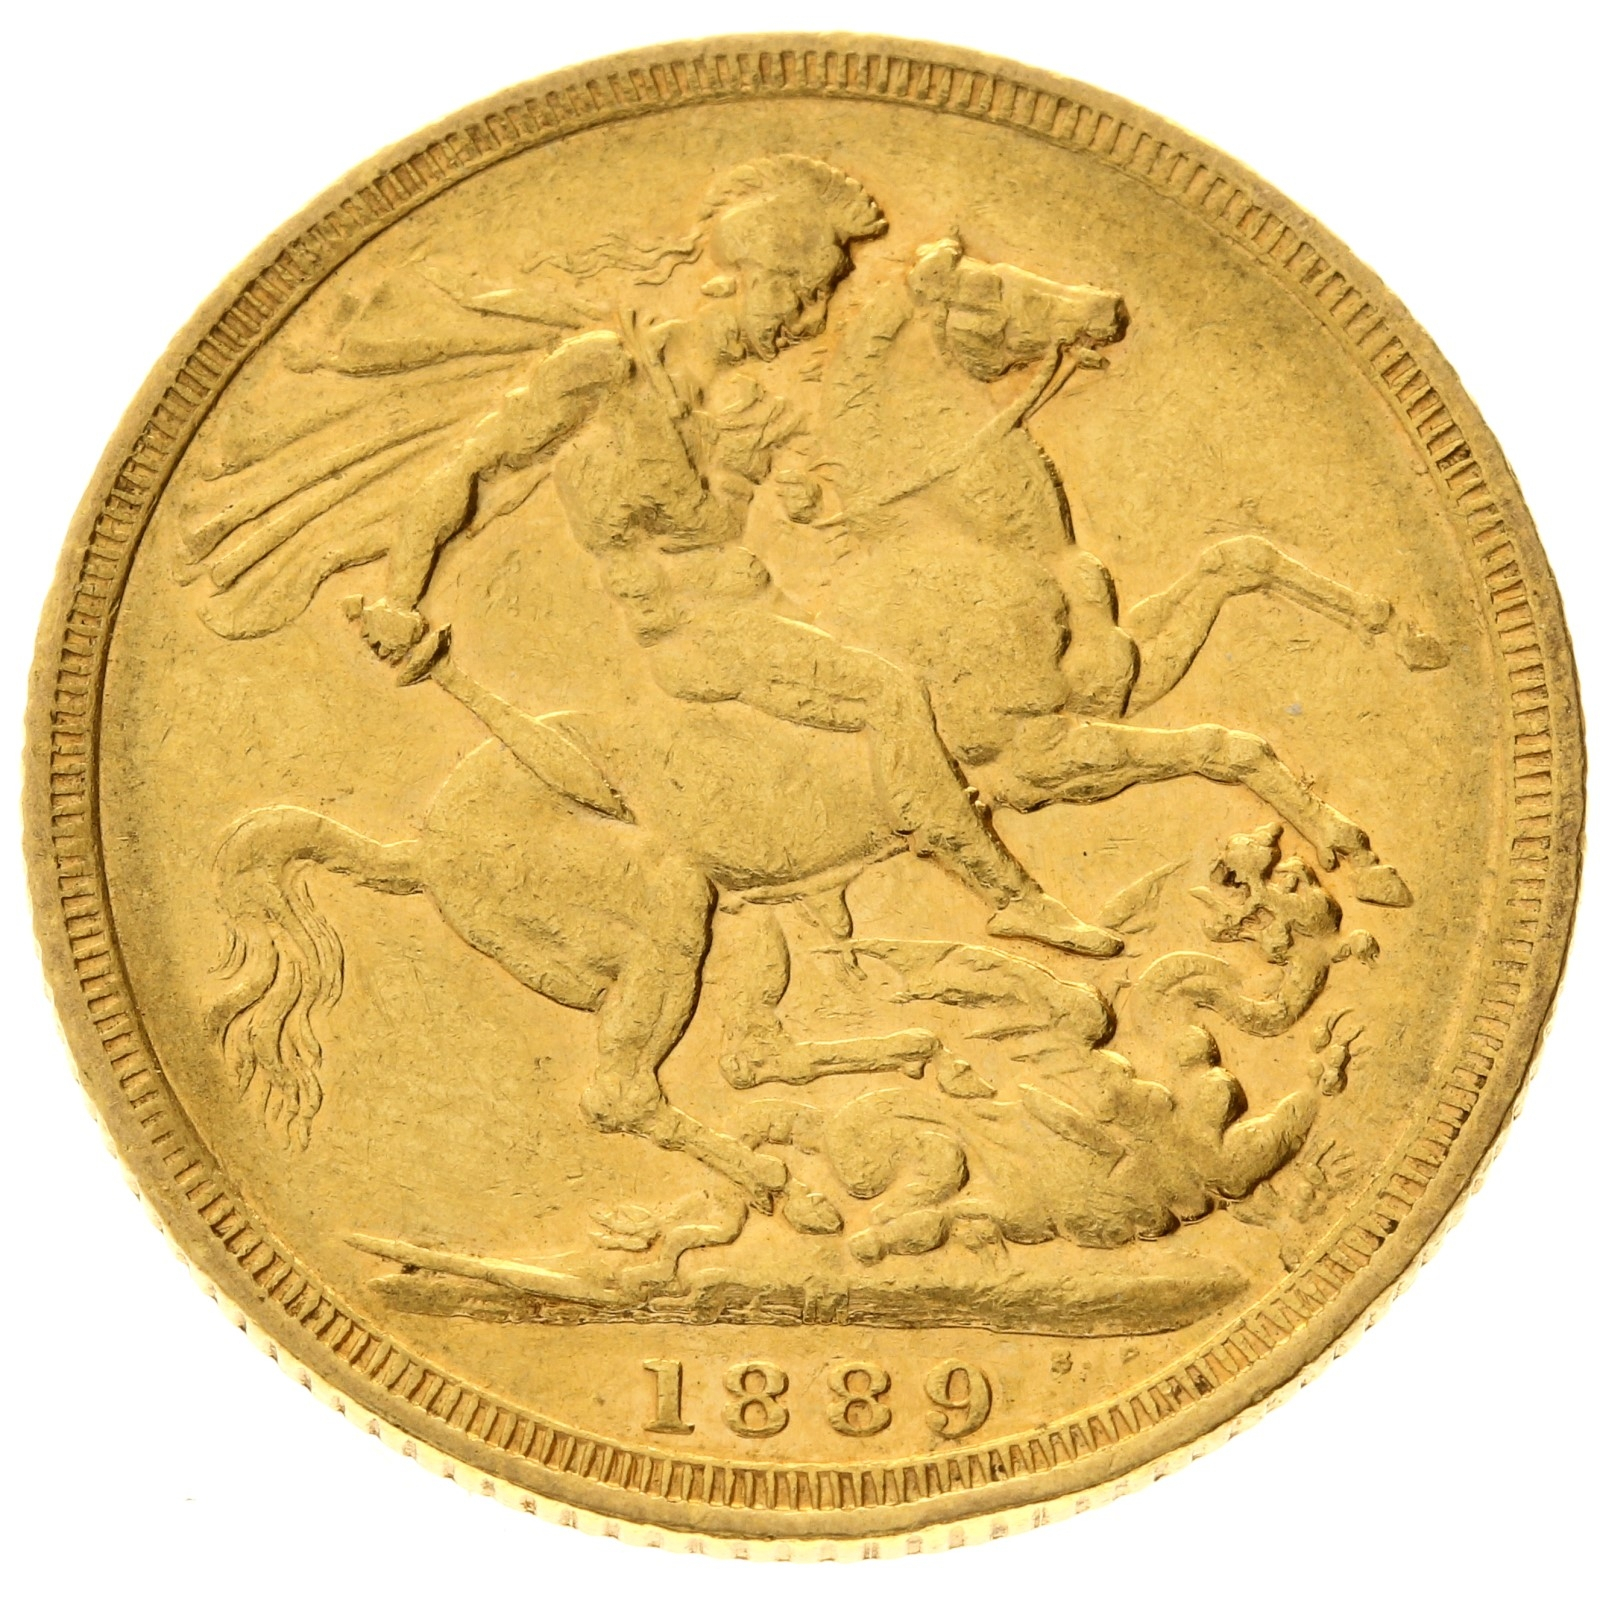 Australia - 1 sovereign - 1889 - M - Victoria 